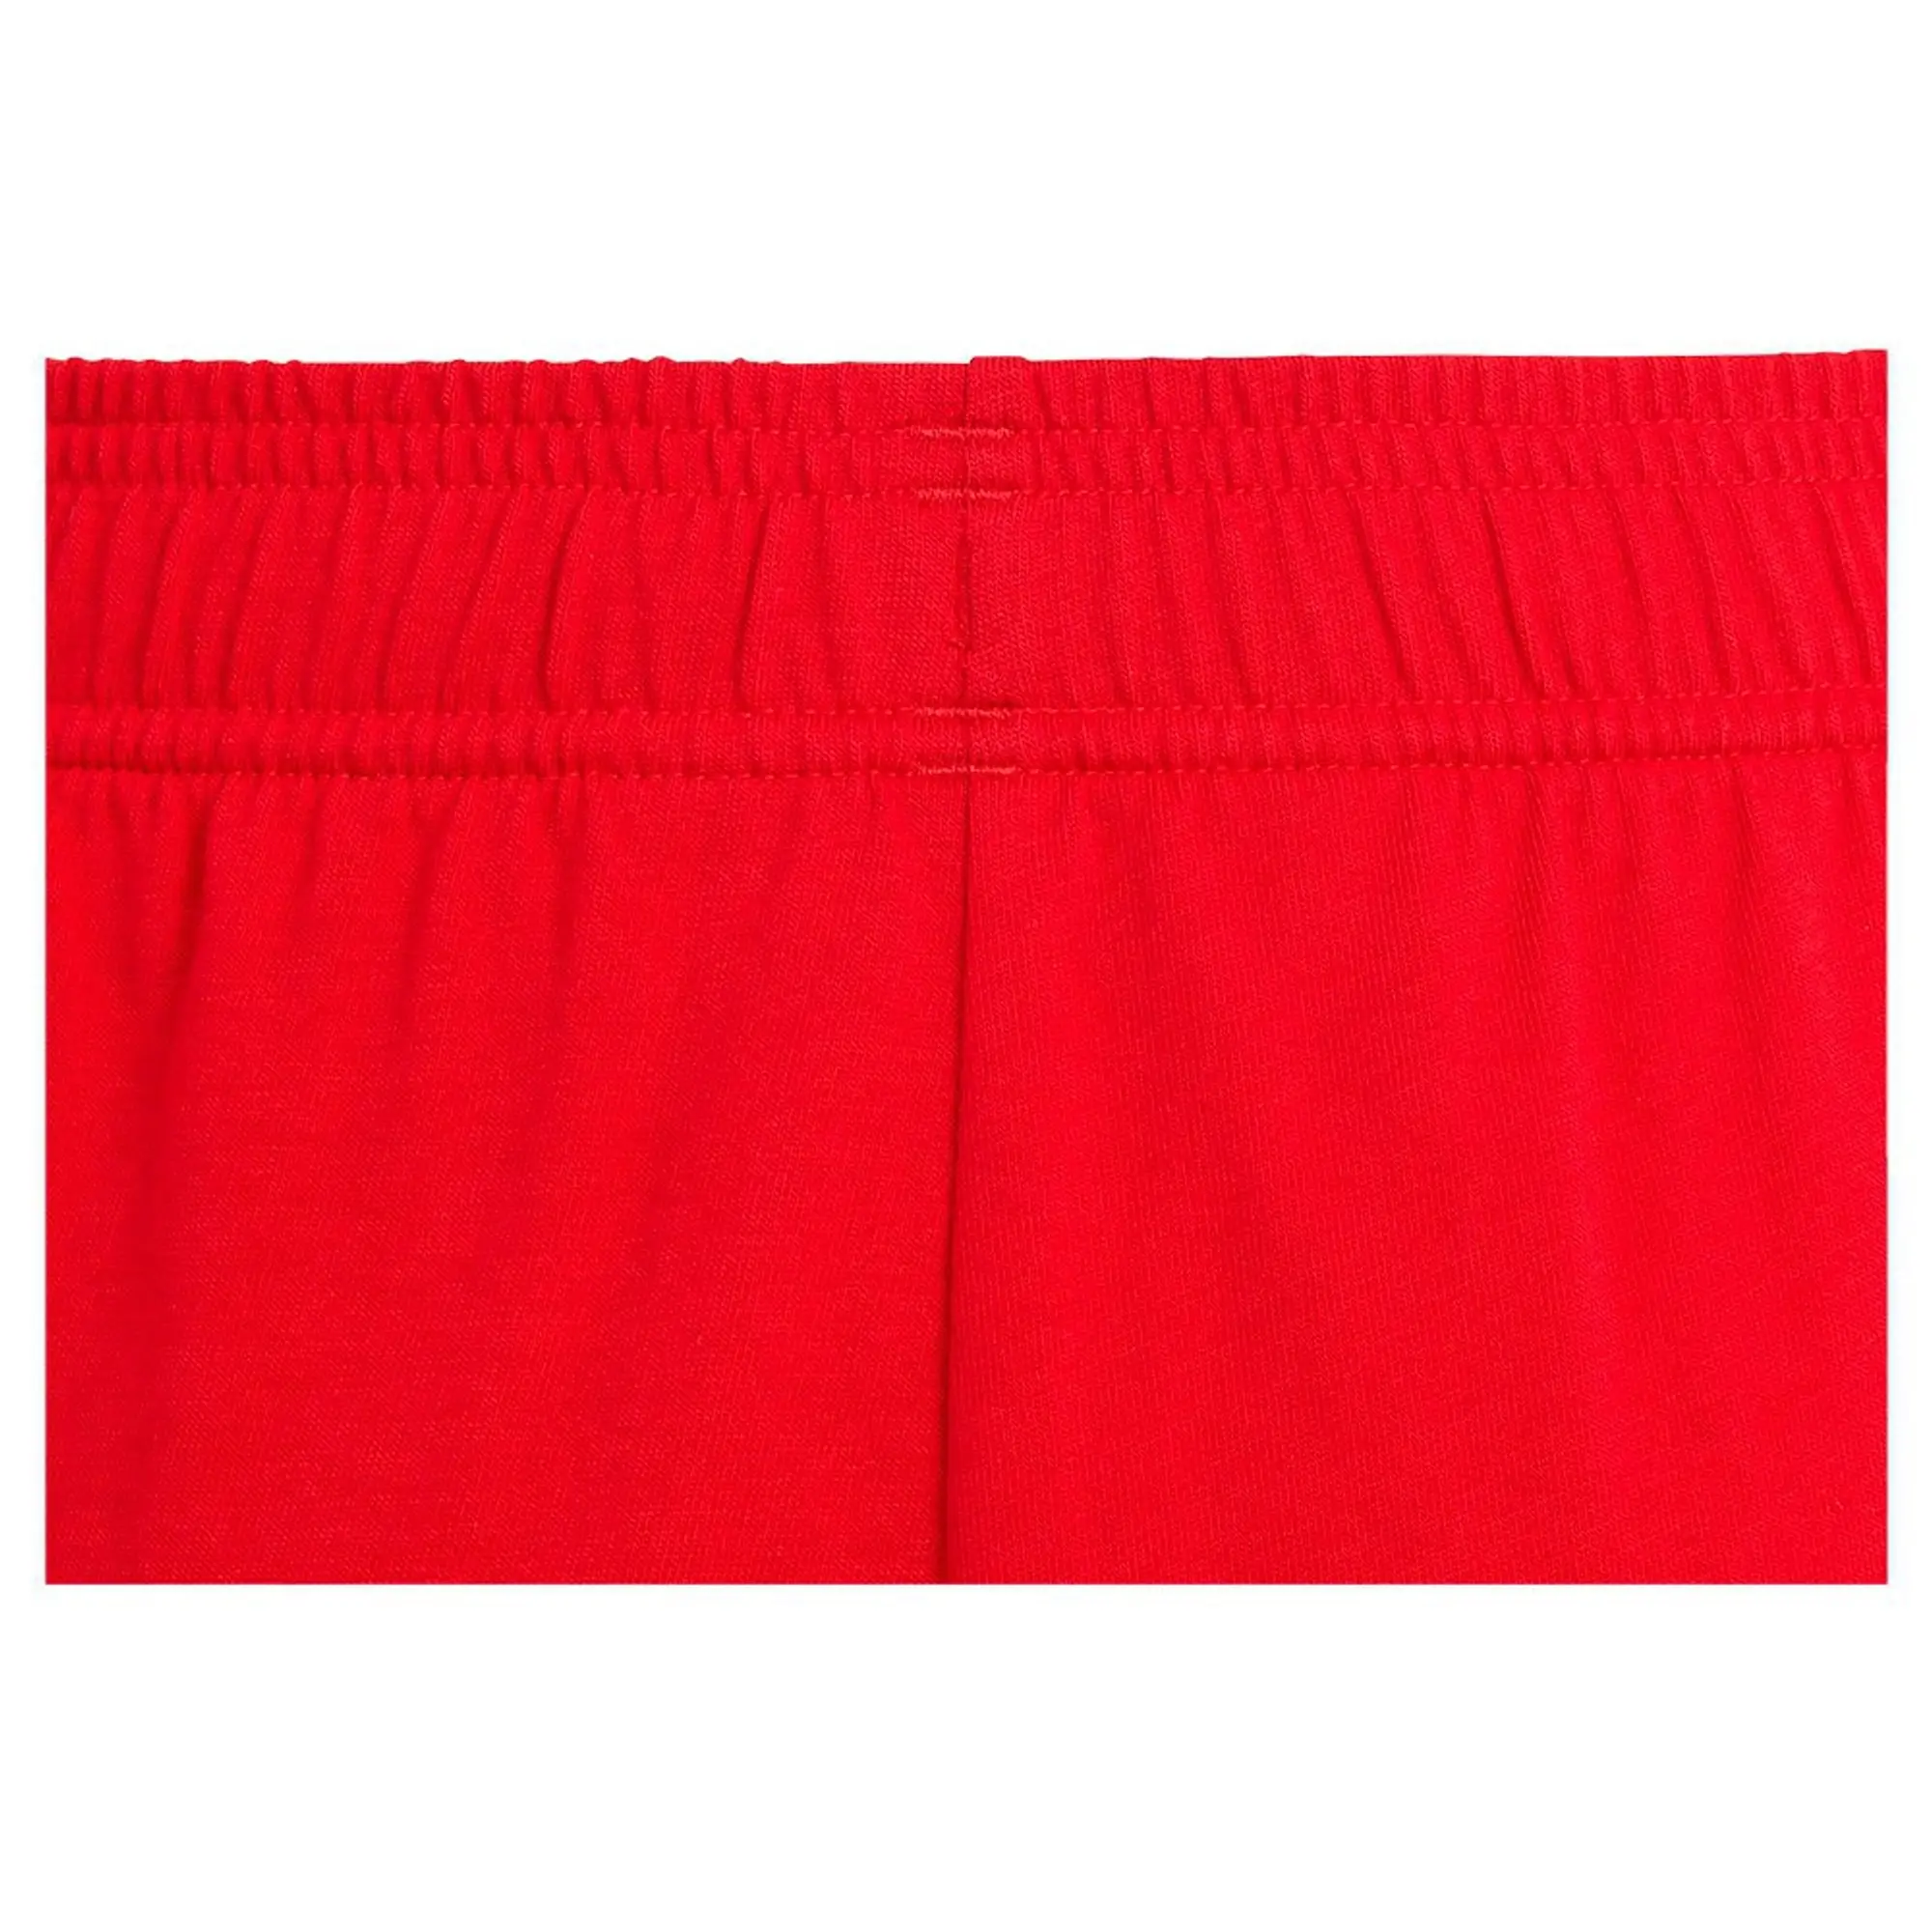 Adidas Sportswear Bl Shorts  - Red